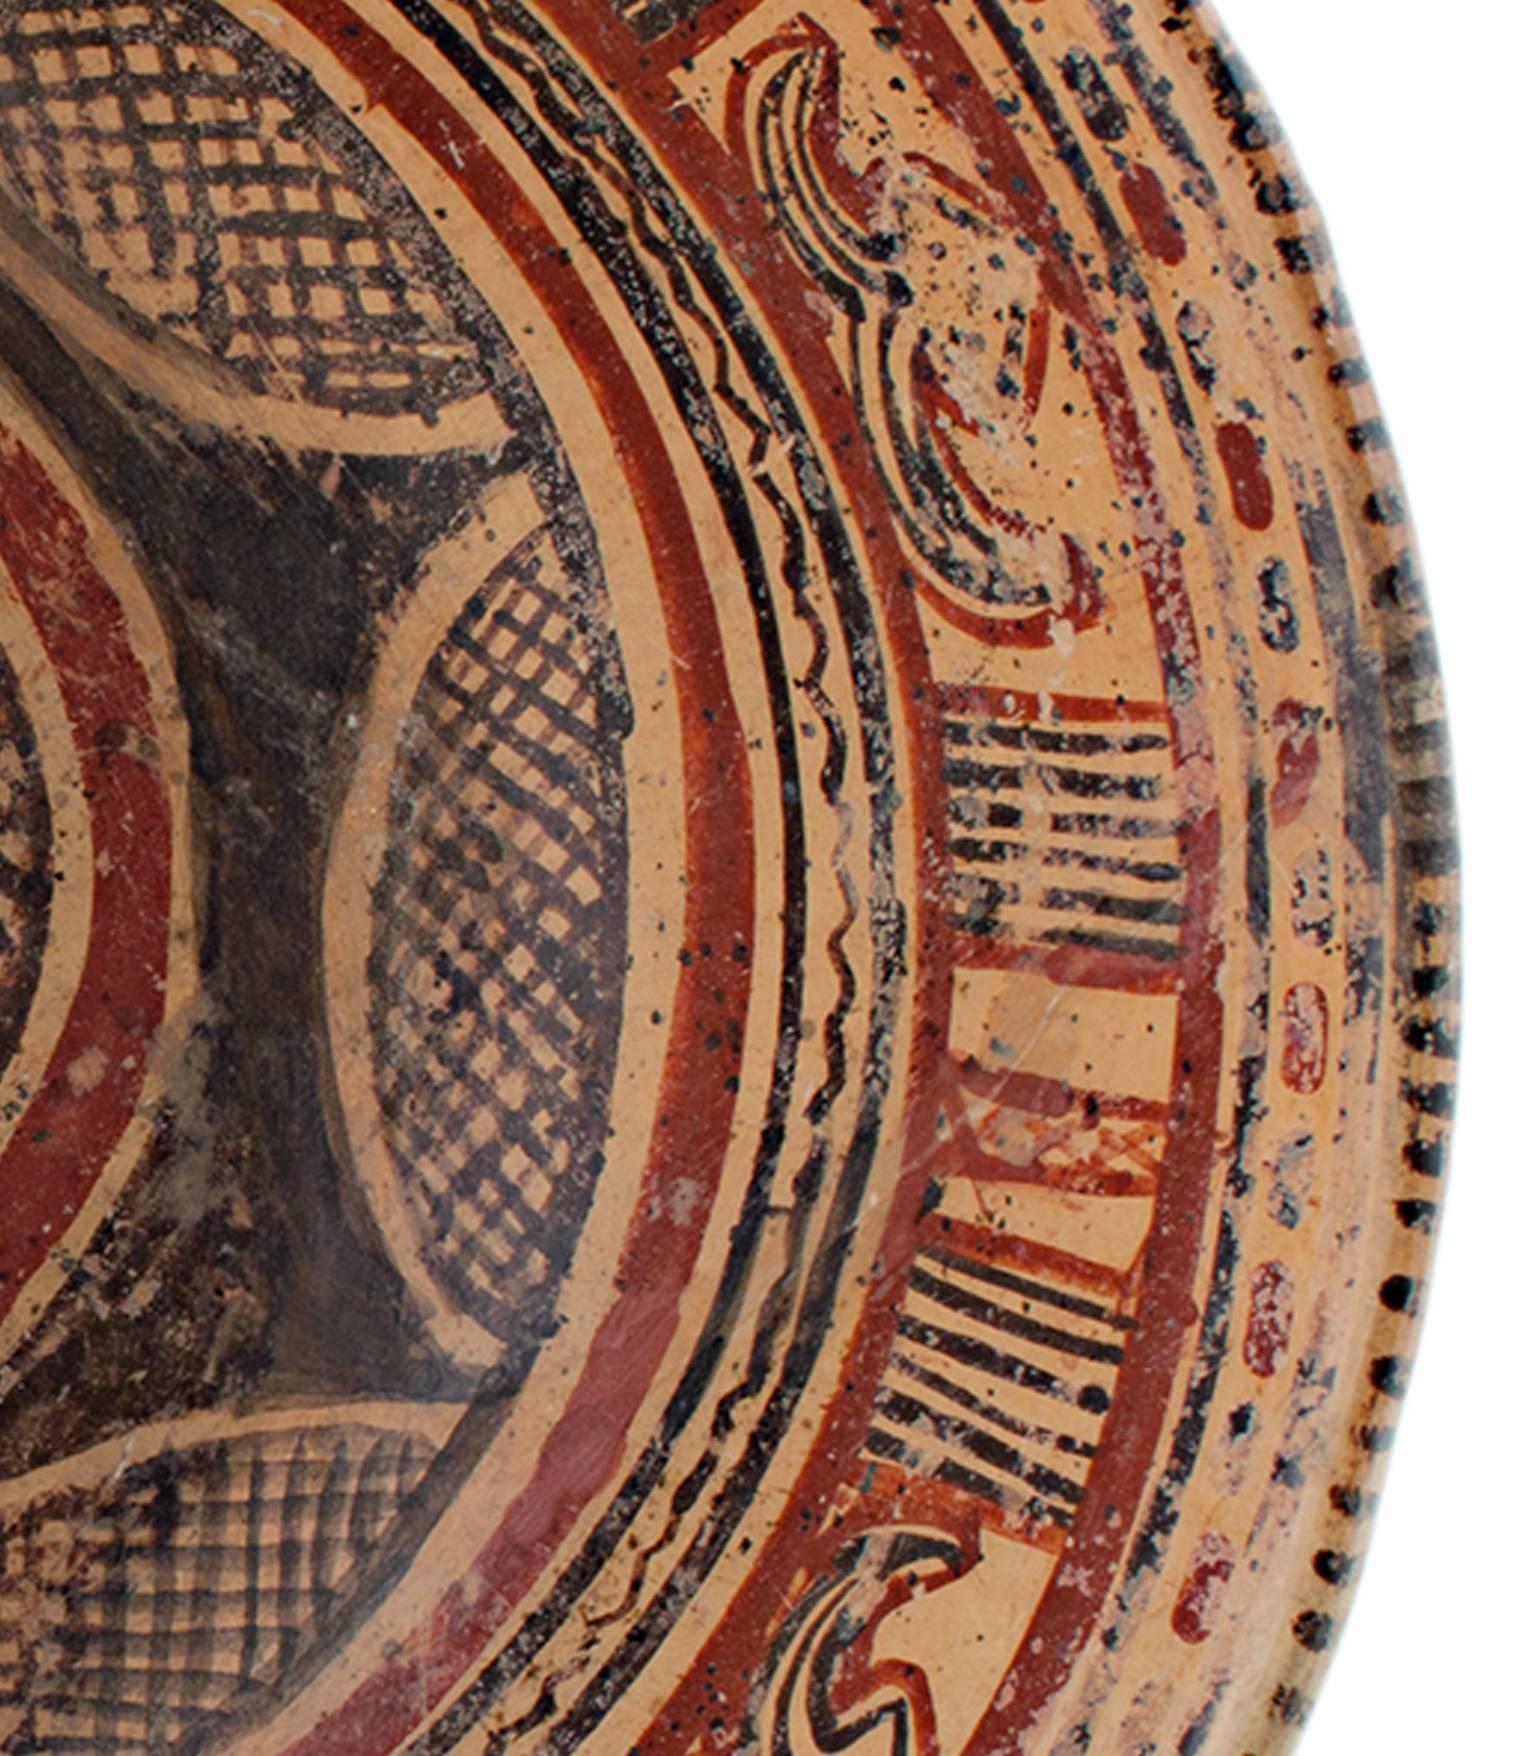 „Prekolumbianische Chinesco-Schale“, glasierte Keramik, um 300 v. Chr. (Geometrische Abstraktion), Sculpture, von Unknown